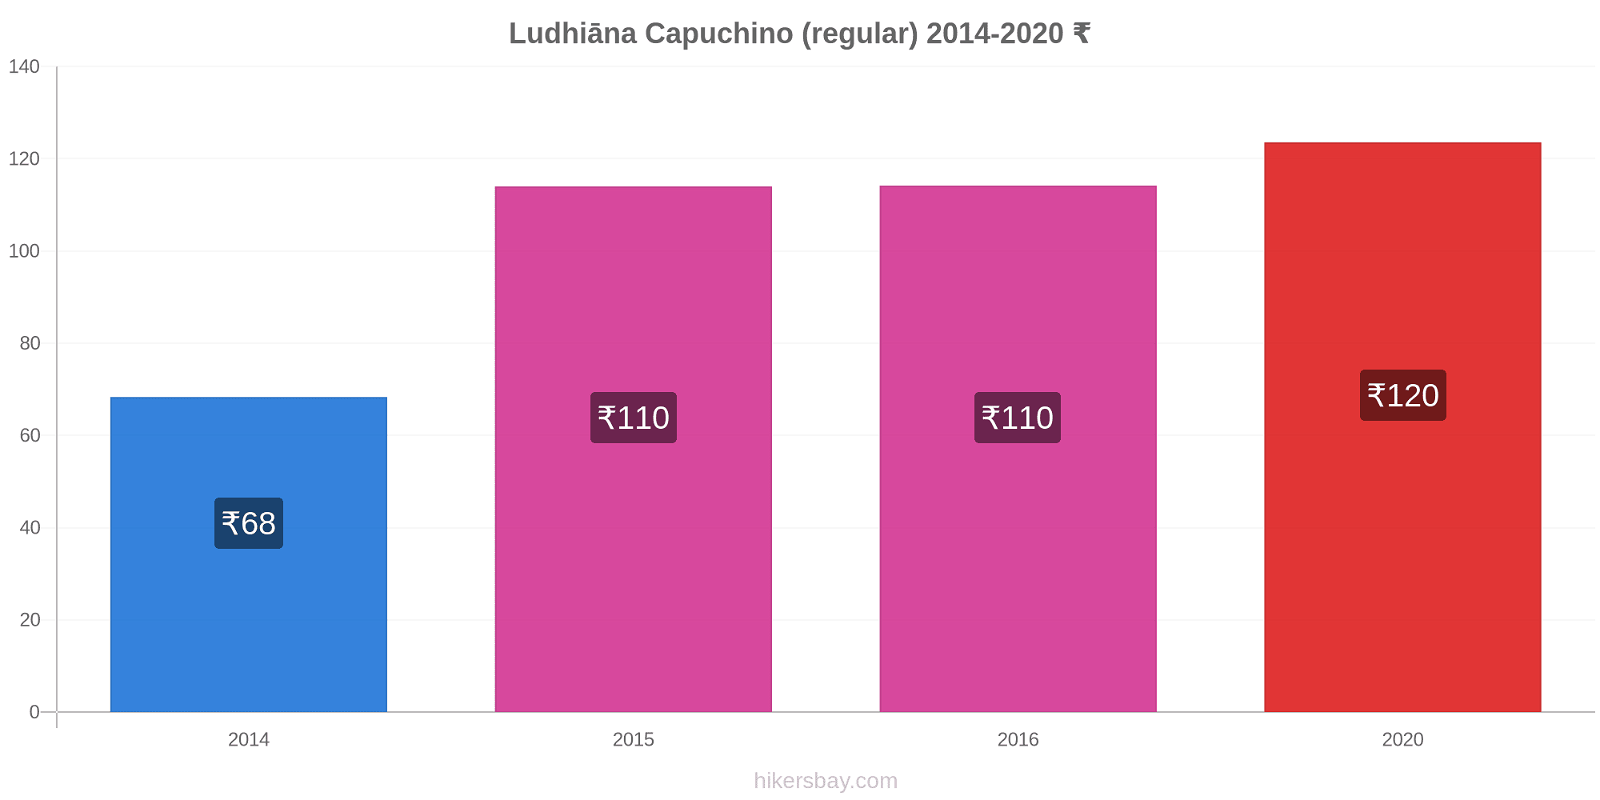 Ludhiāna cambios de precios Capuchino (regular) hikersbay.com